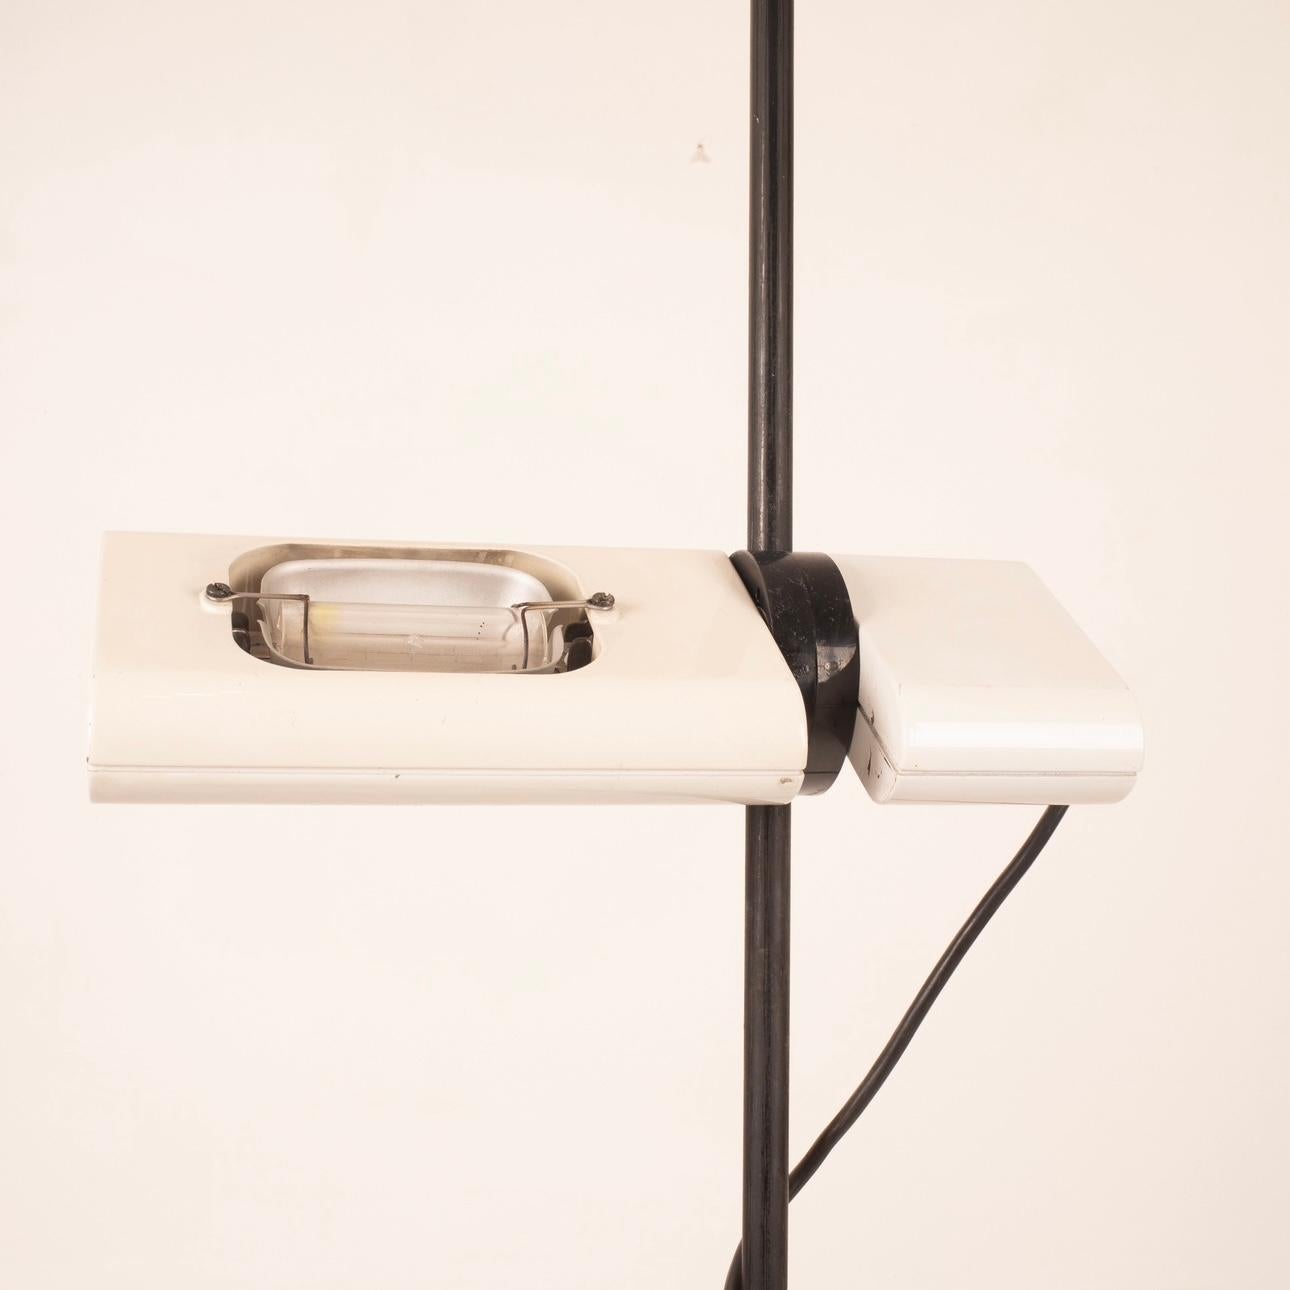 Le lampadaire Aton mod. Aton, conçu par Ernesto Gismondi en 1980 pour Artemide, est un excellent exemple de design italien contemporain.
Ce lampadaire est une combinaison de forme, de fonctionnalité et d'élégance.
Avec une intensité lumineuse